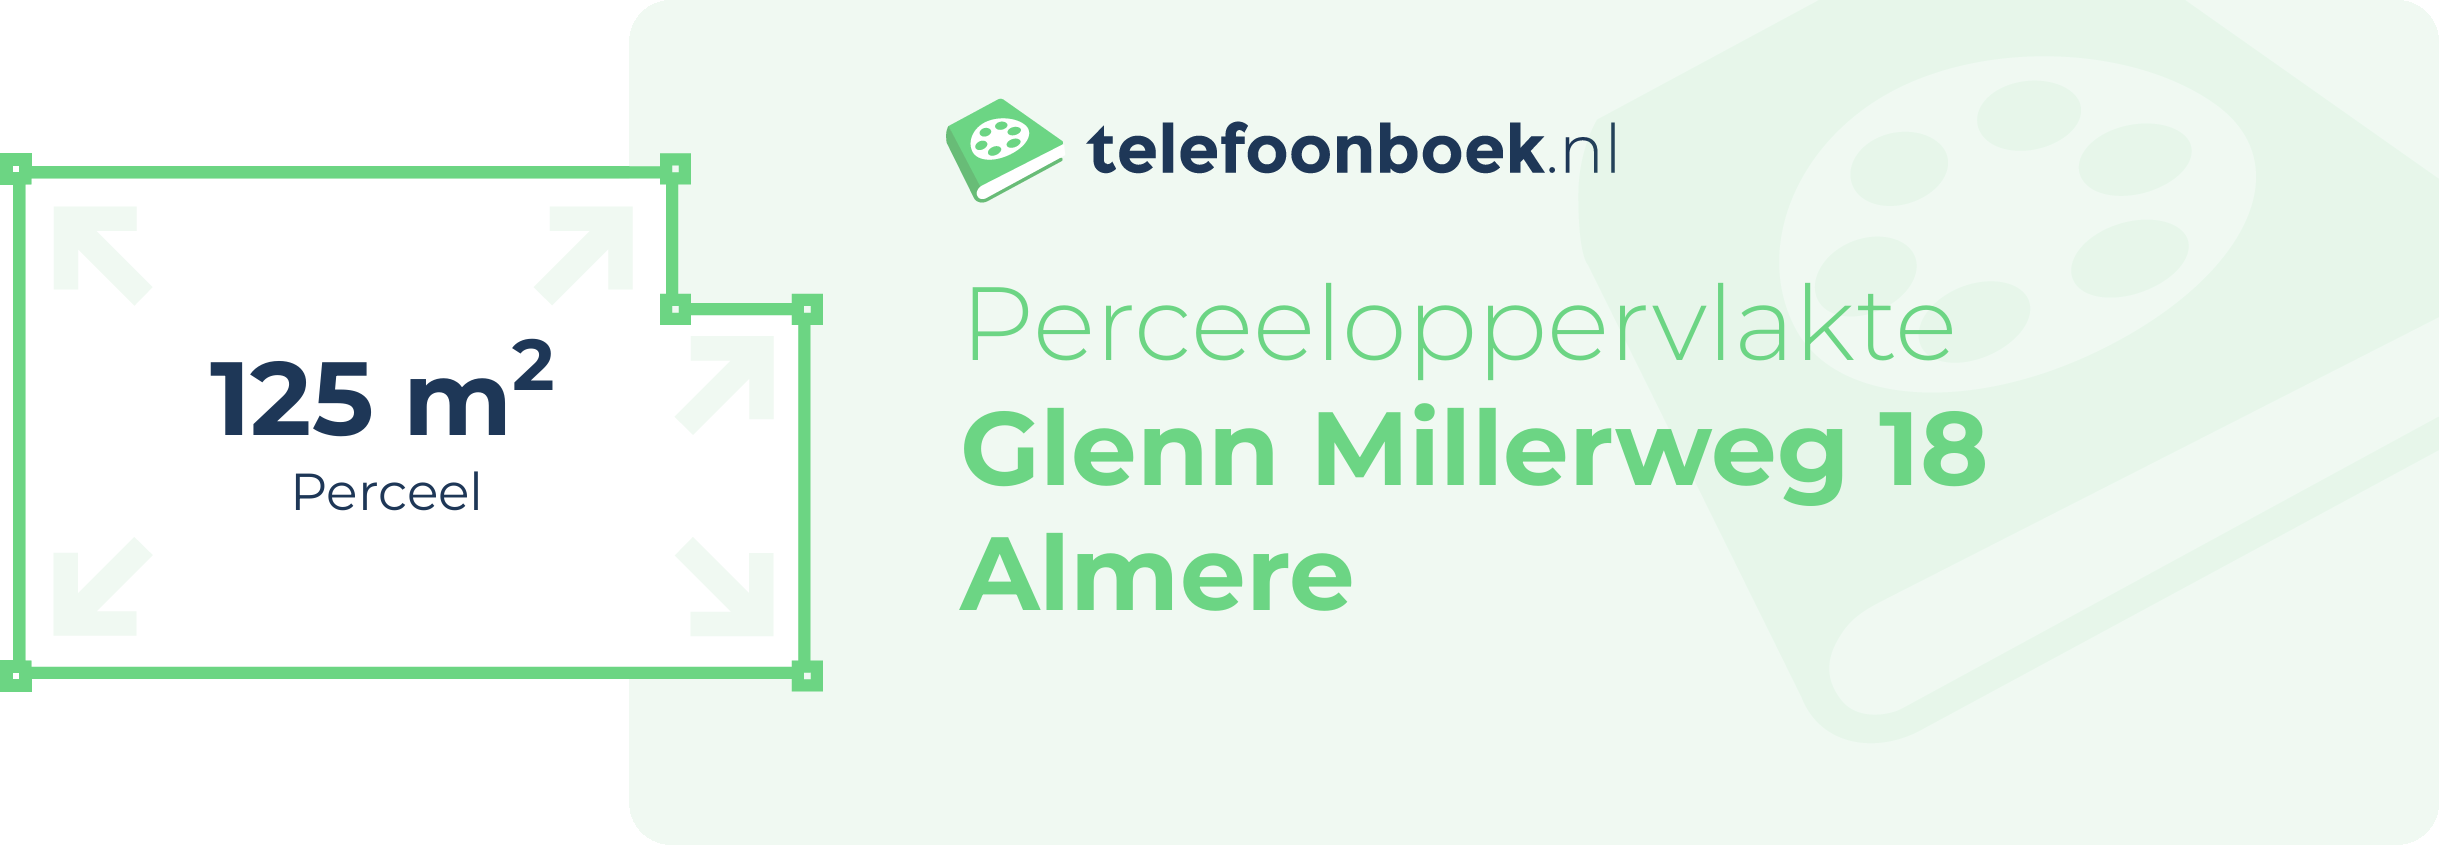 Perceeloppervlakte Glenn Millerweg 18 Almere